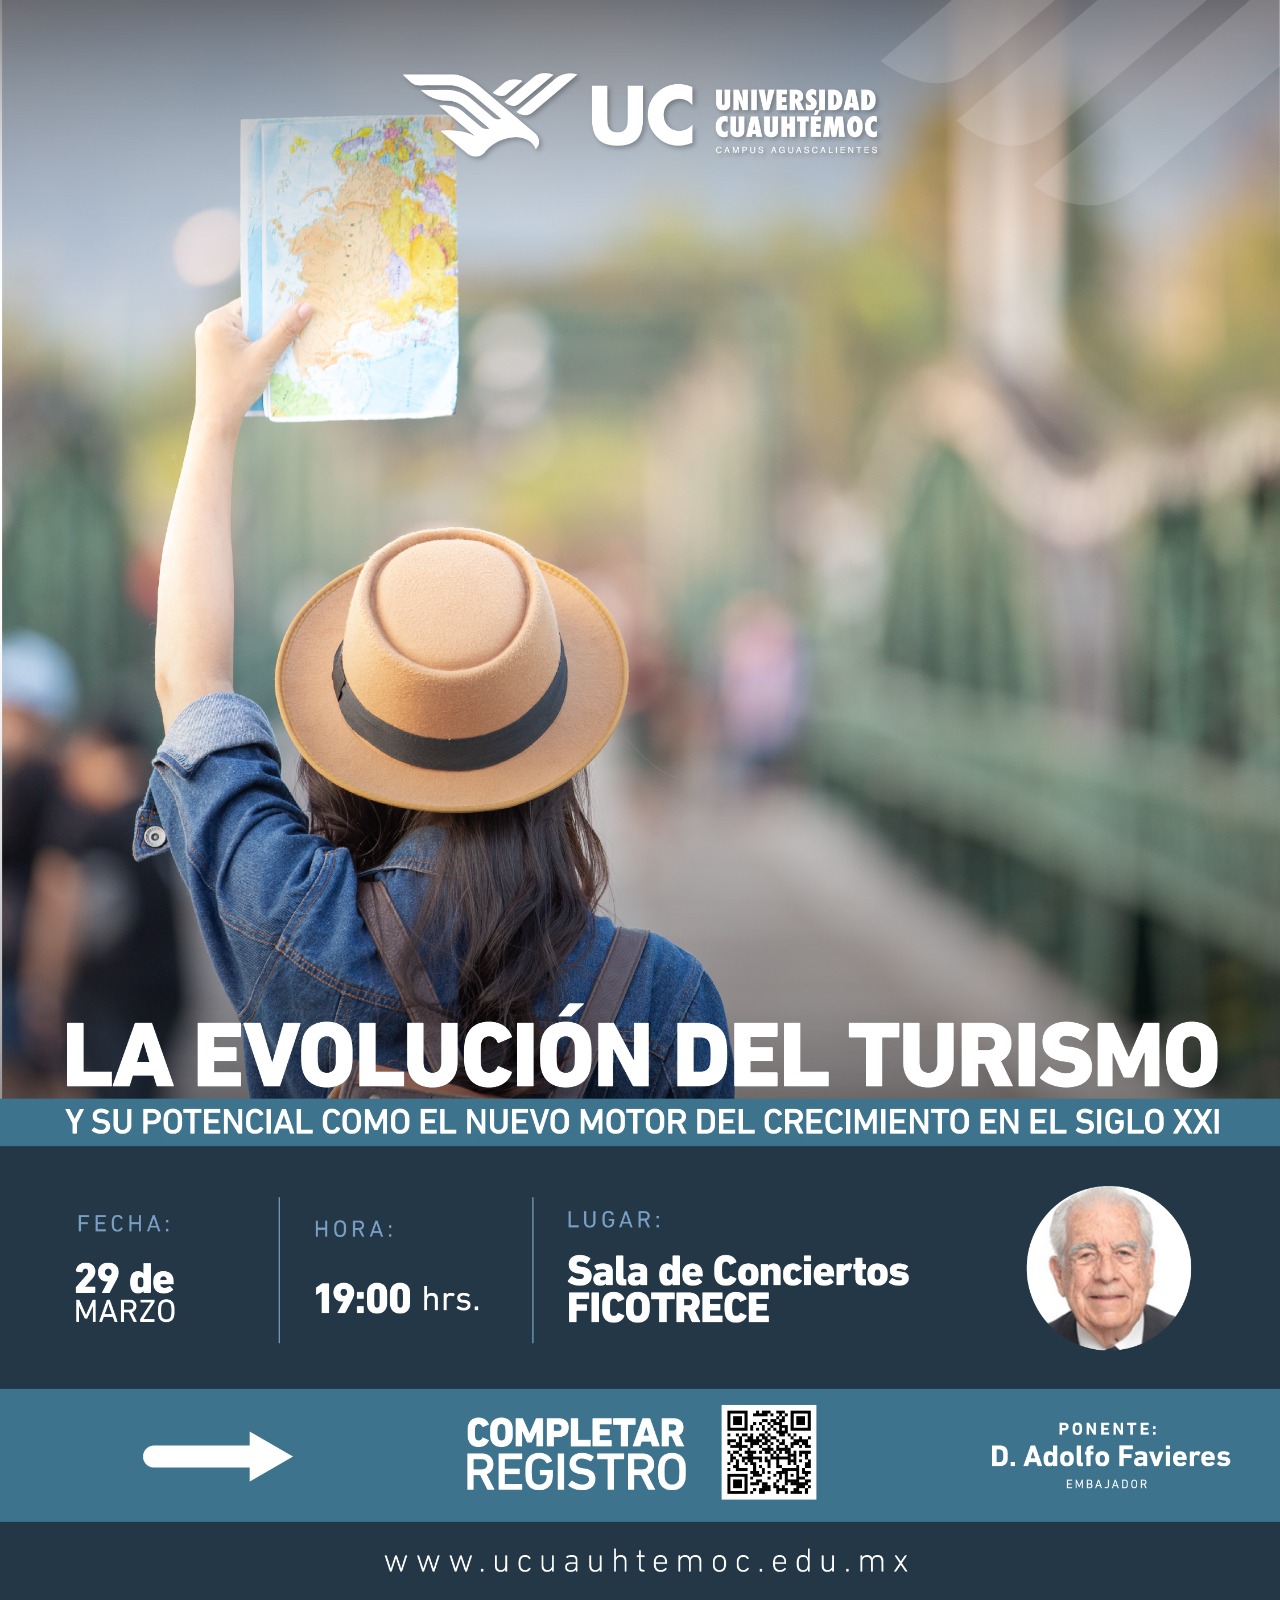 Universidad Cuauhtémoc invita a la conferencia del embajador Favieres en relación al turismo